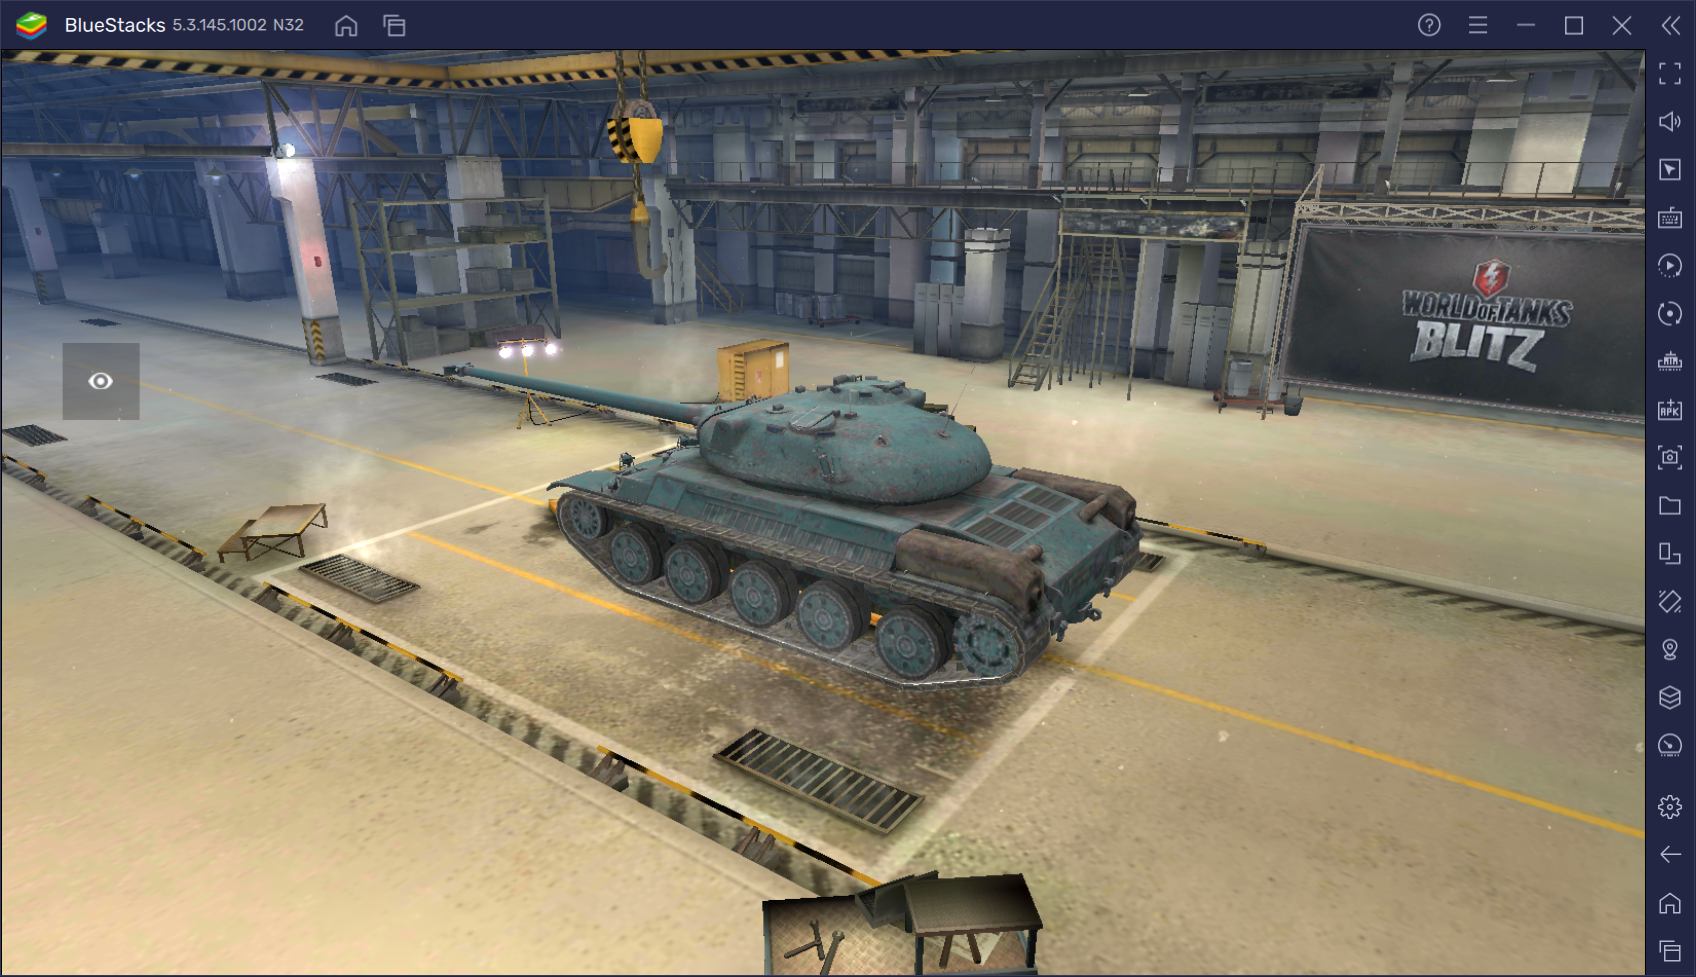 Гайд по коллекционному танку AMX 30 в World of Tanks Blitz. Характеристики, сильные стороны и тактики игры